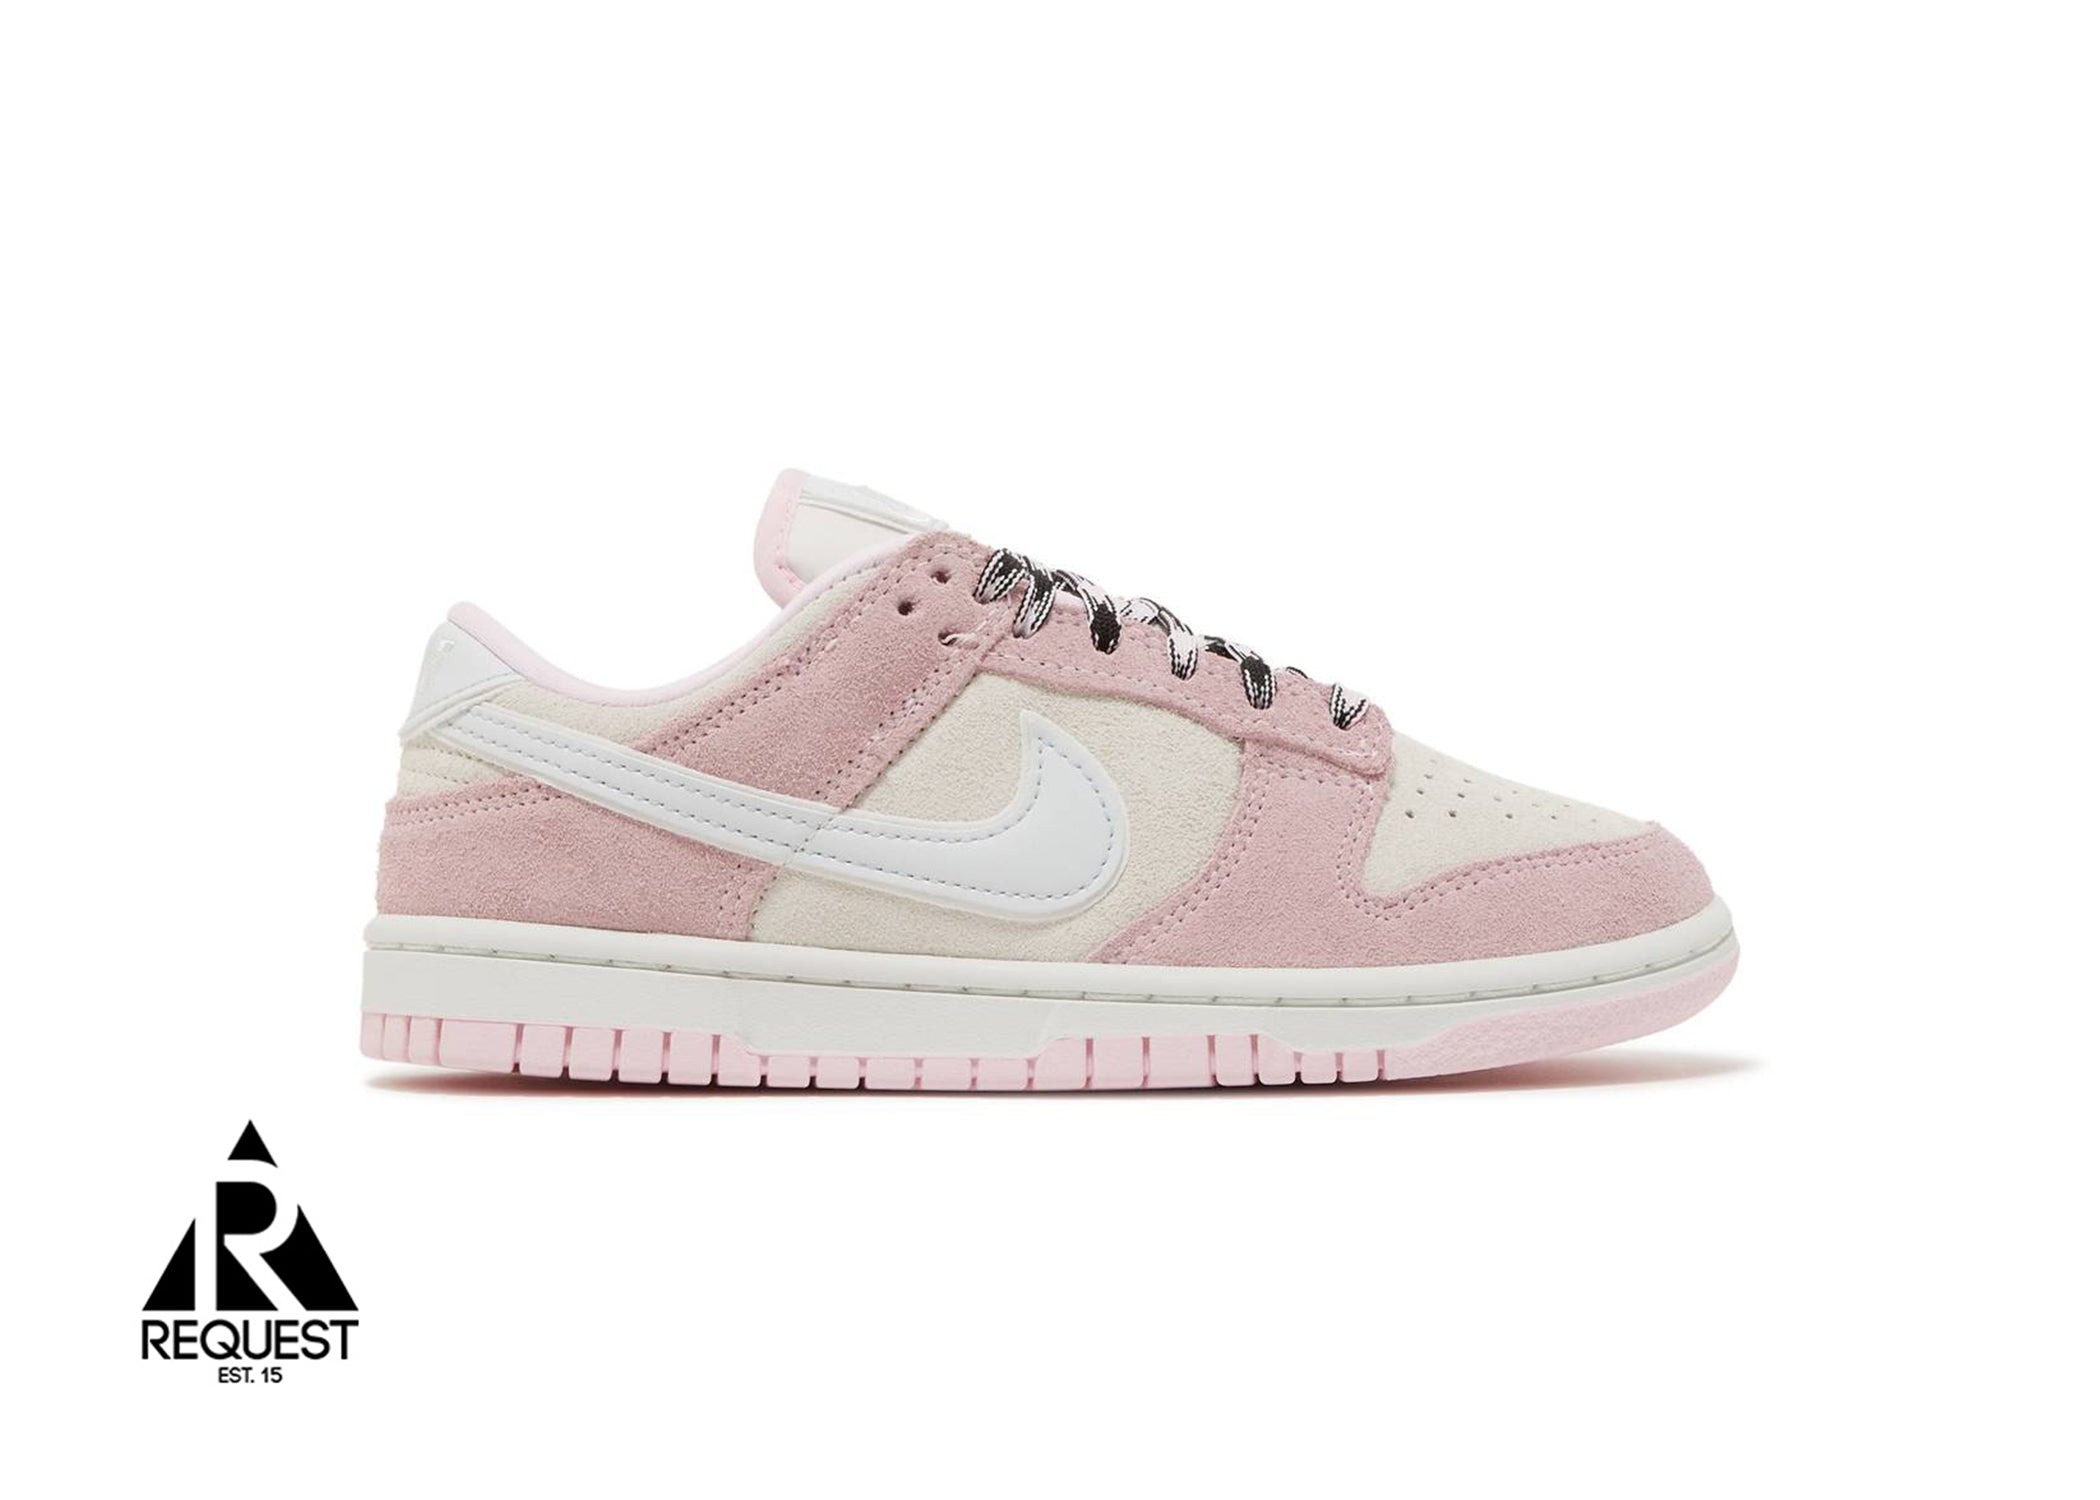 Nike Dunk Low LX "Pink Foam" (W)